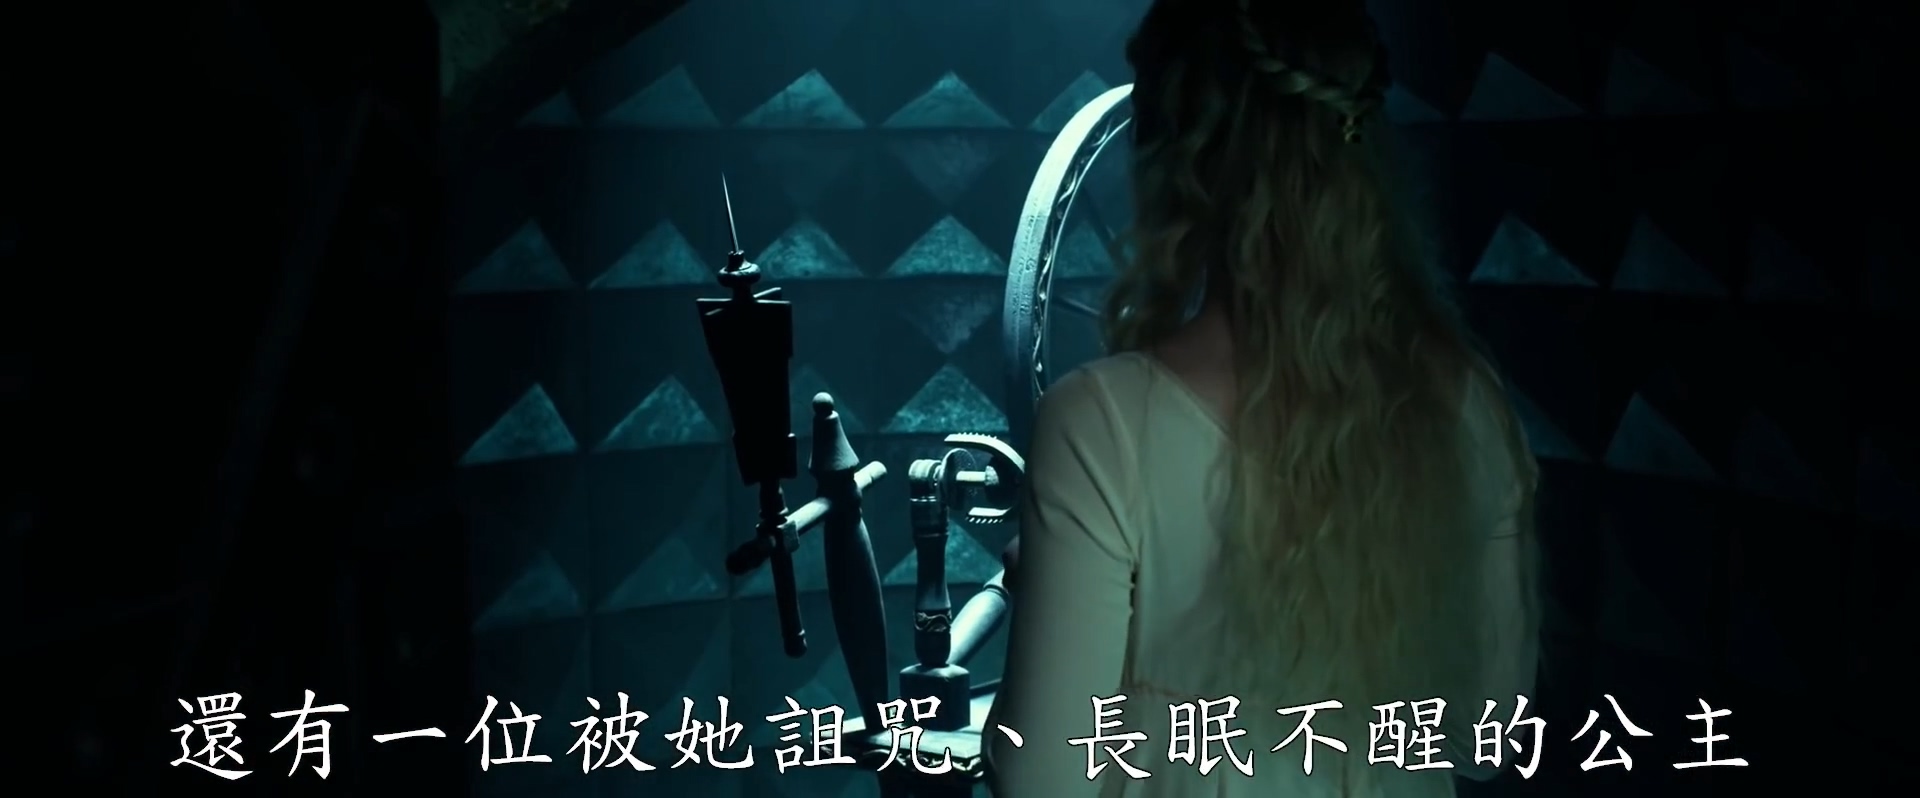 《沉睡魔咒2》首曝中字预告 安吉丽娜·朱莉霸气回归